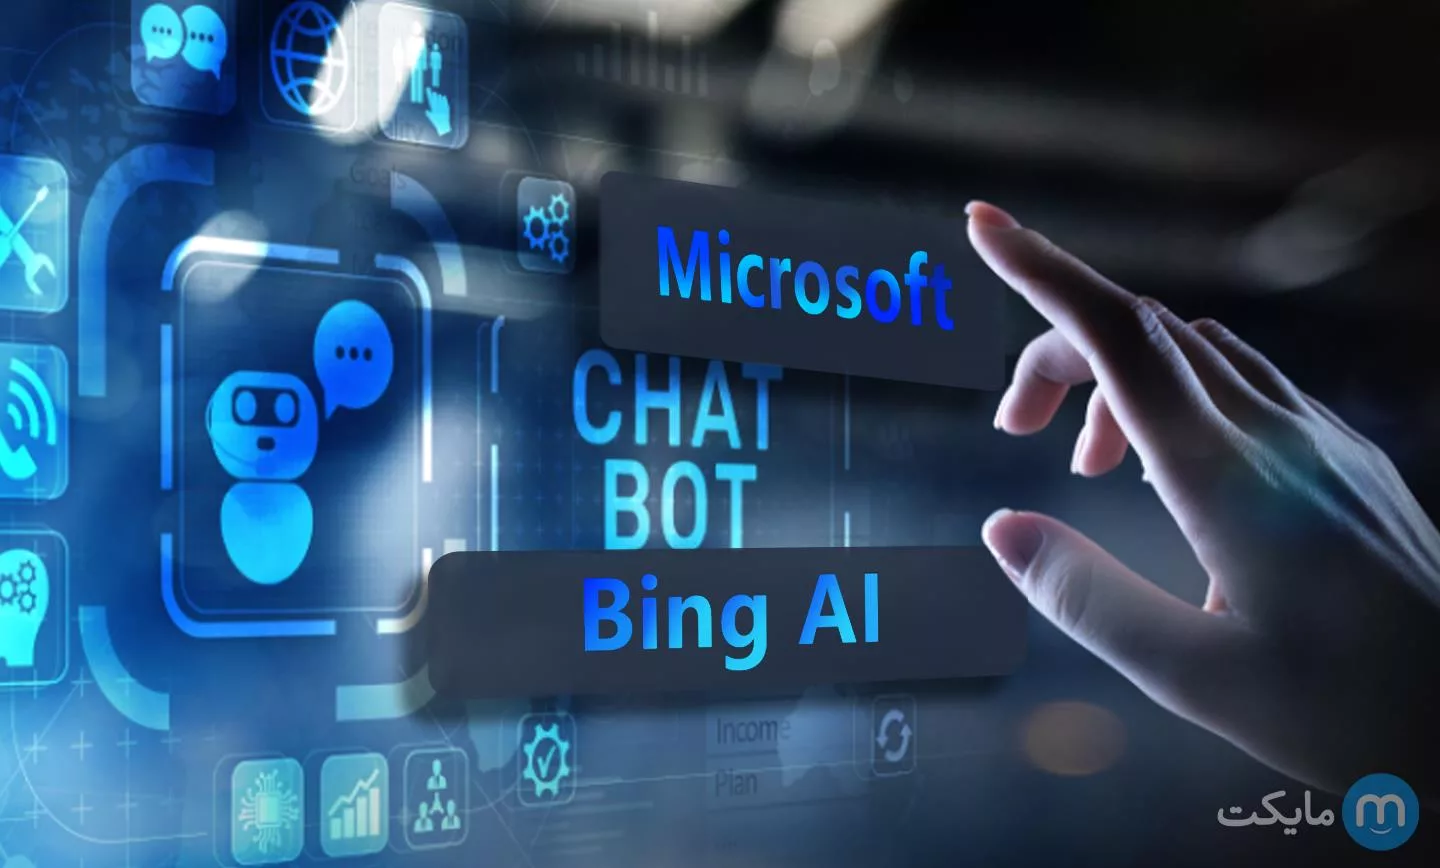 Bing AI Announced By Microsoft